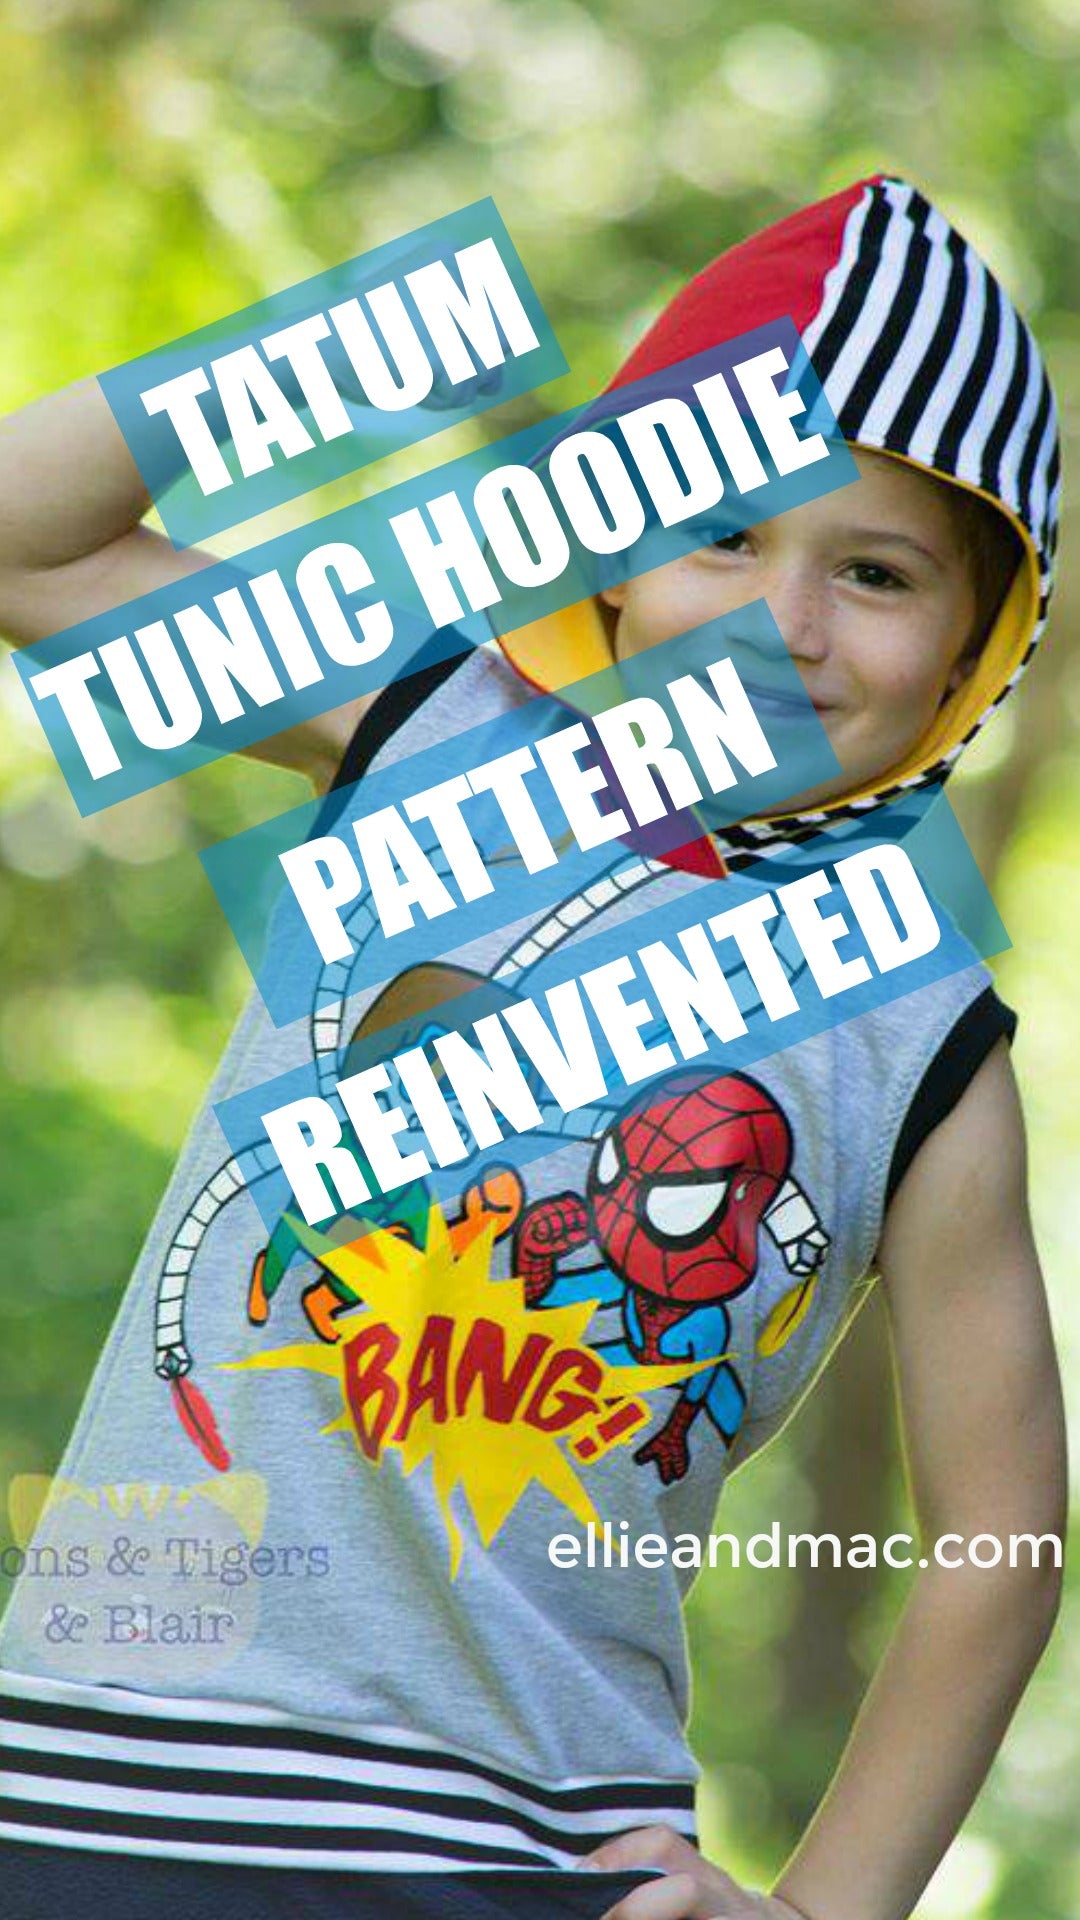 Tatum Tank Hoodie Reinvented